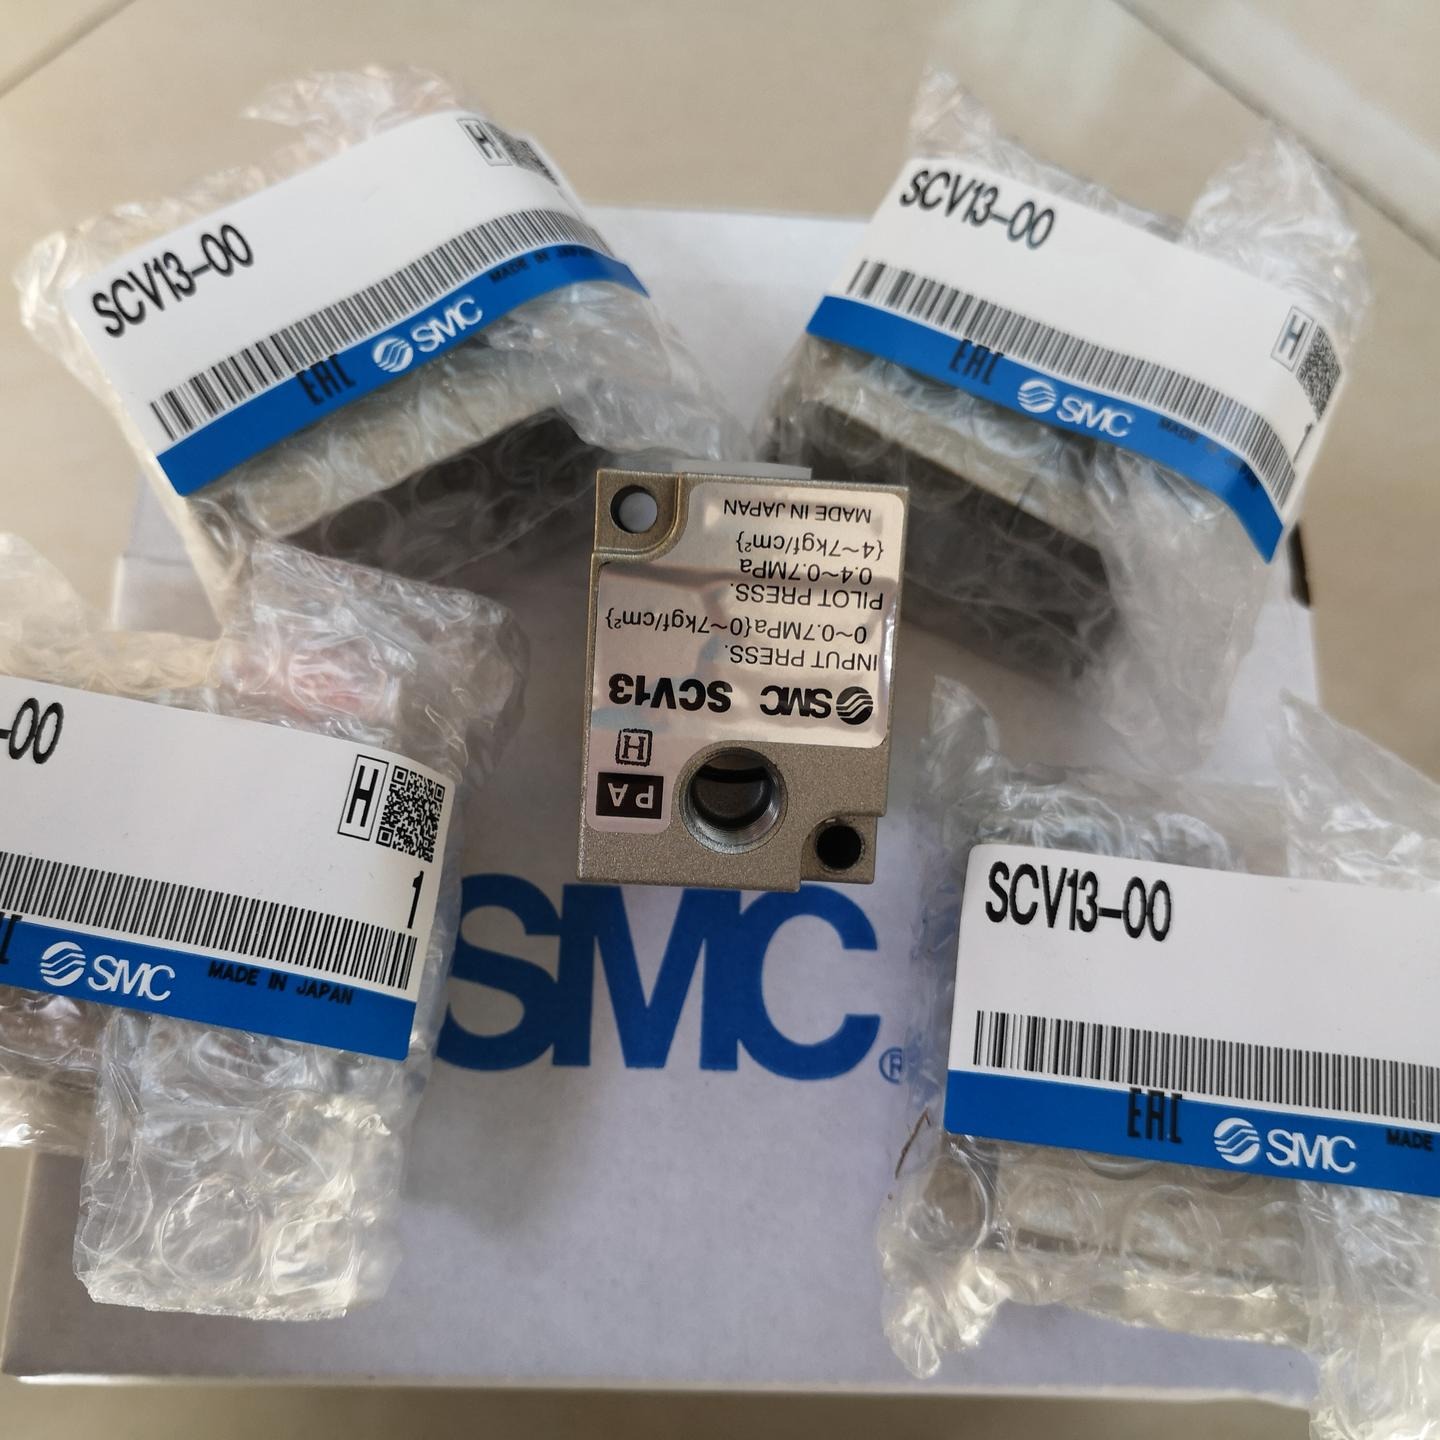 SMC涂料换色阀SVC13-00经销批发价格 SMC涂料换色阀模块批发